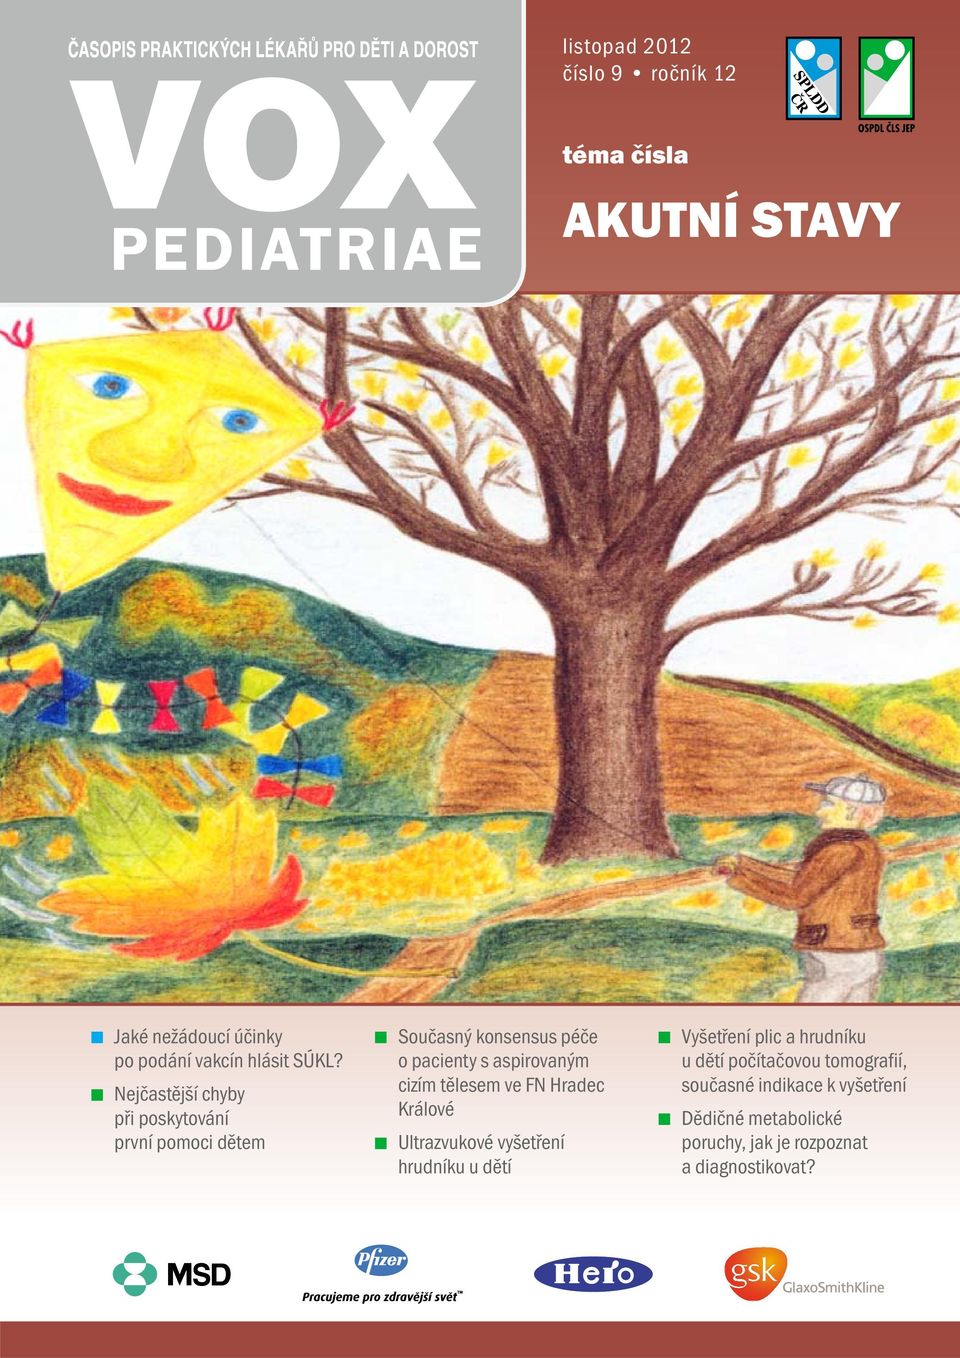 tělesem ve FN Hradec Králové Ultrazvukové vyšetření hrudníku u dětí Vyšetření plic a hrudníku u dětí